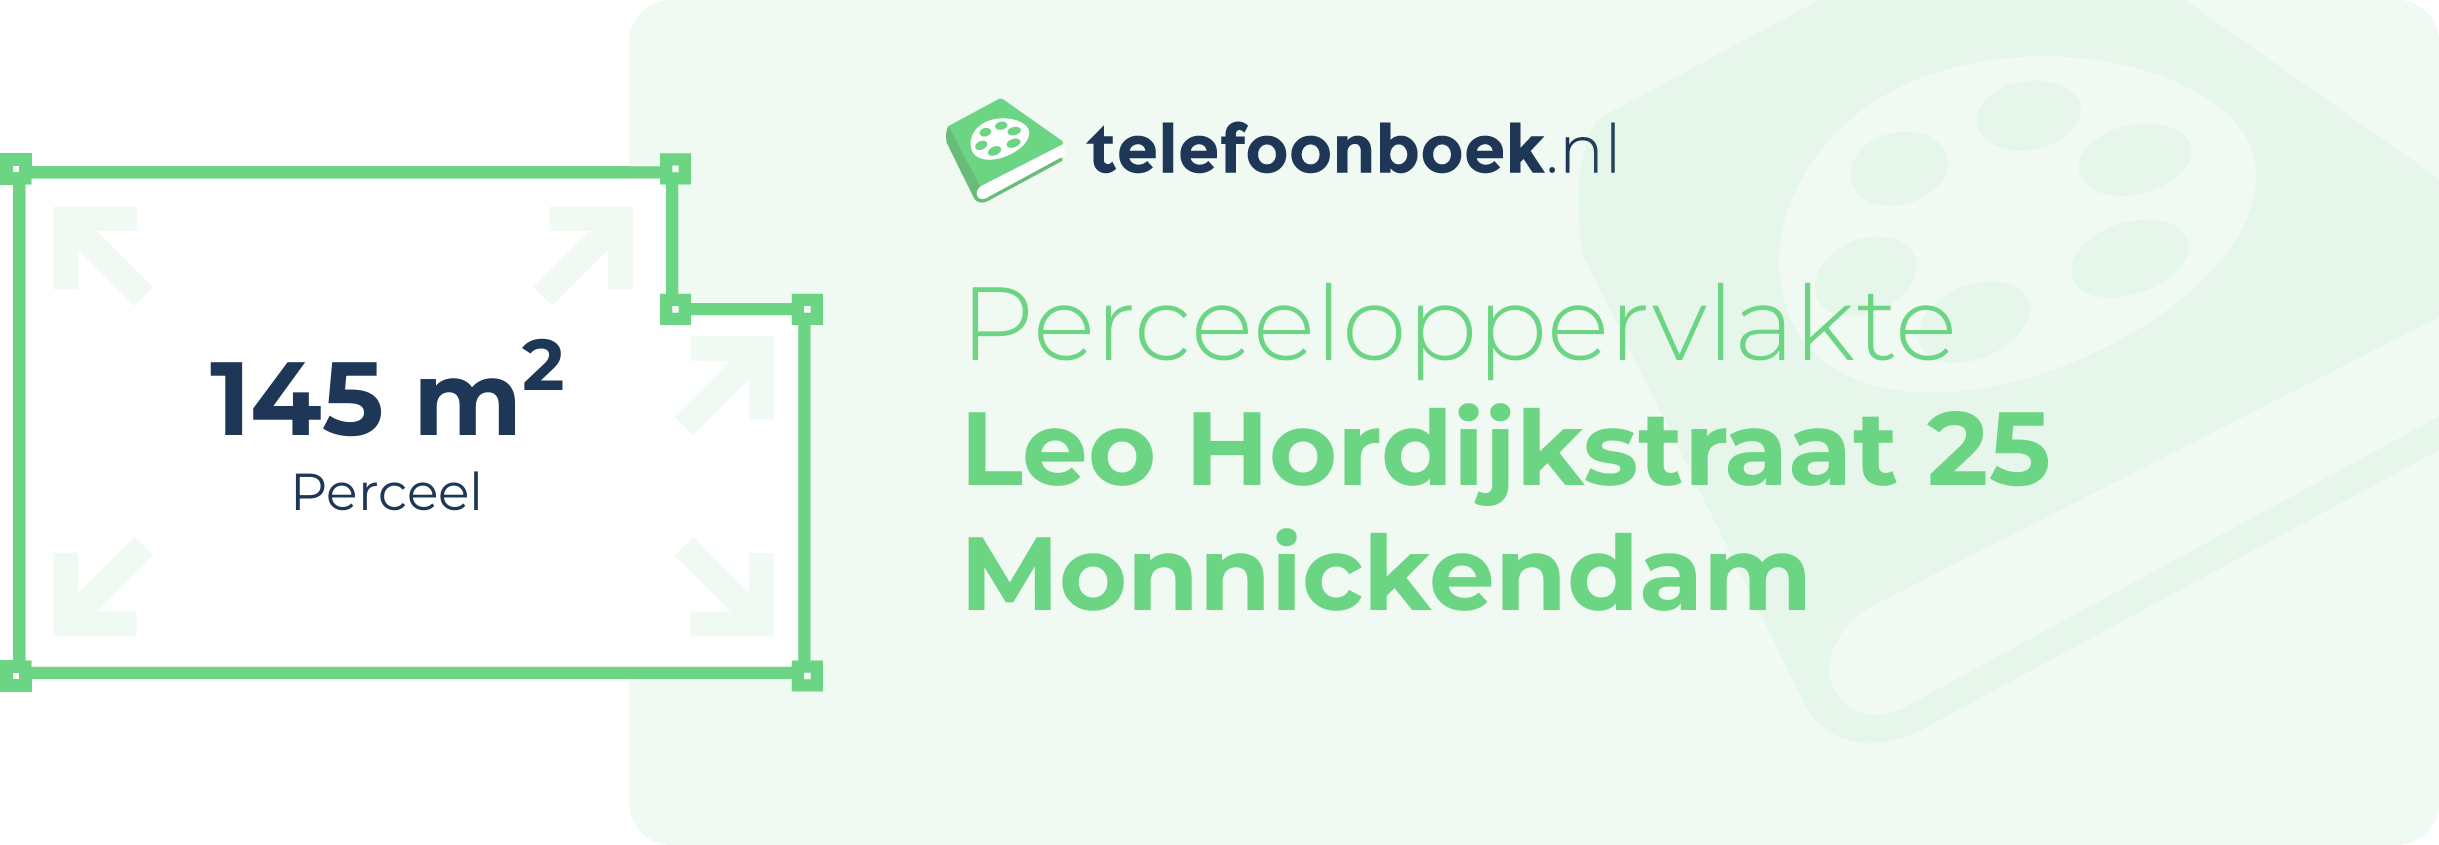 Perceeloppervlakte Leo Hordijkstraat 25 Monnickendam